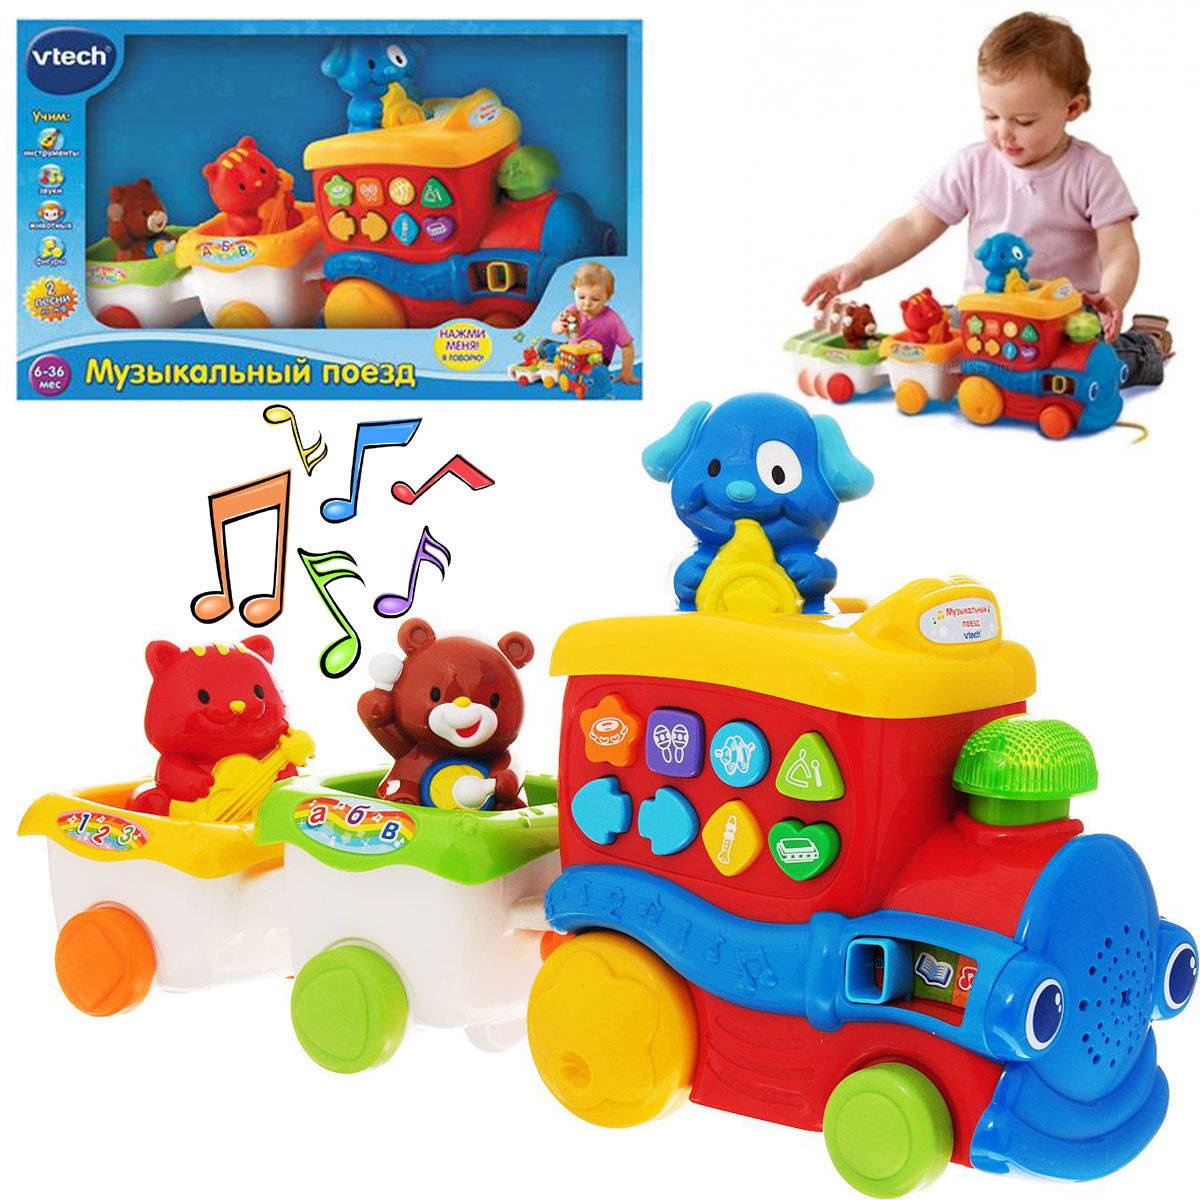 Развивающая игрушка – Музыкальный поезд, со светом и звуком  